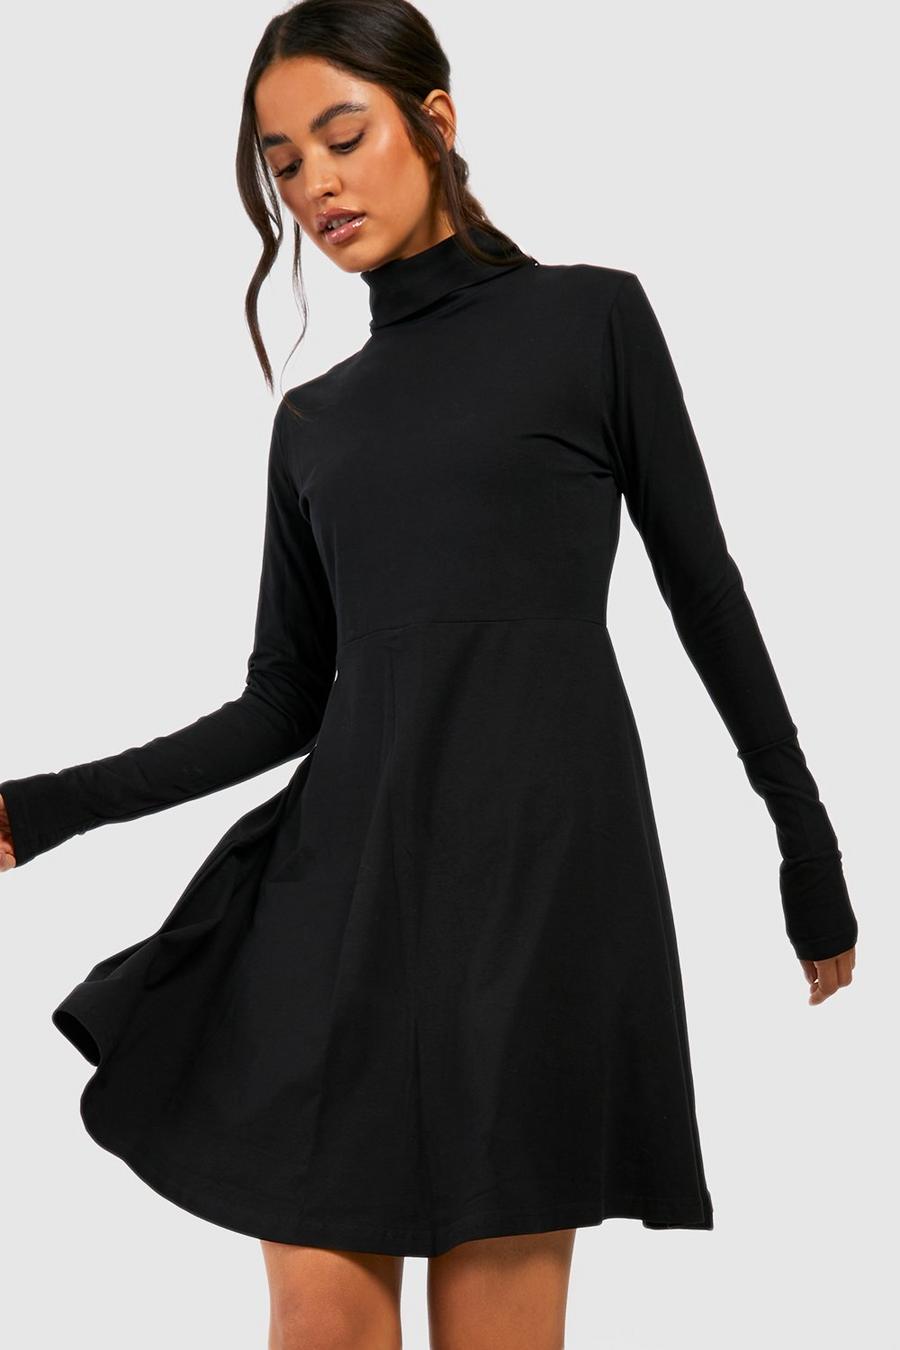 Black Basic Long Sleeve High Neck Skater Dress